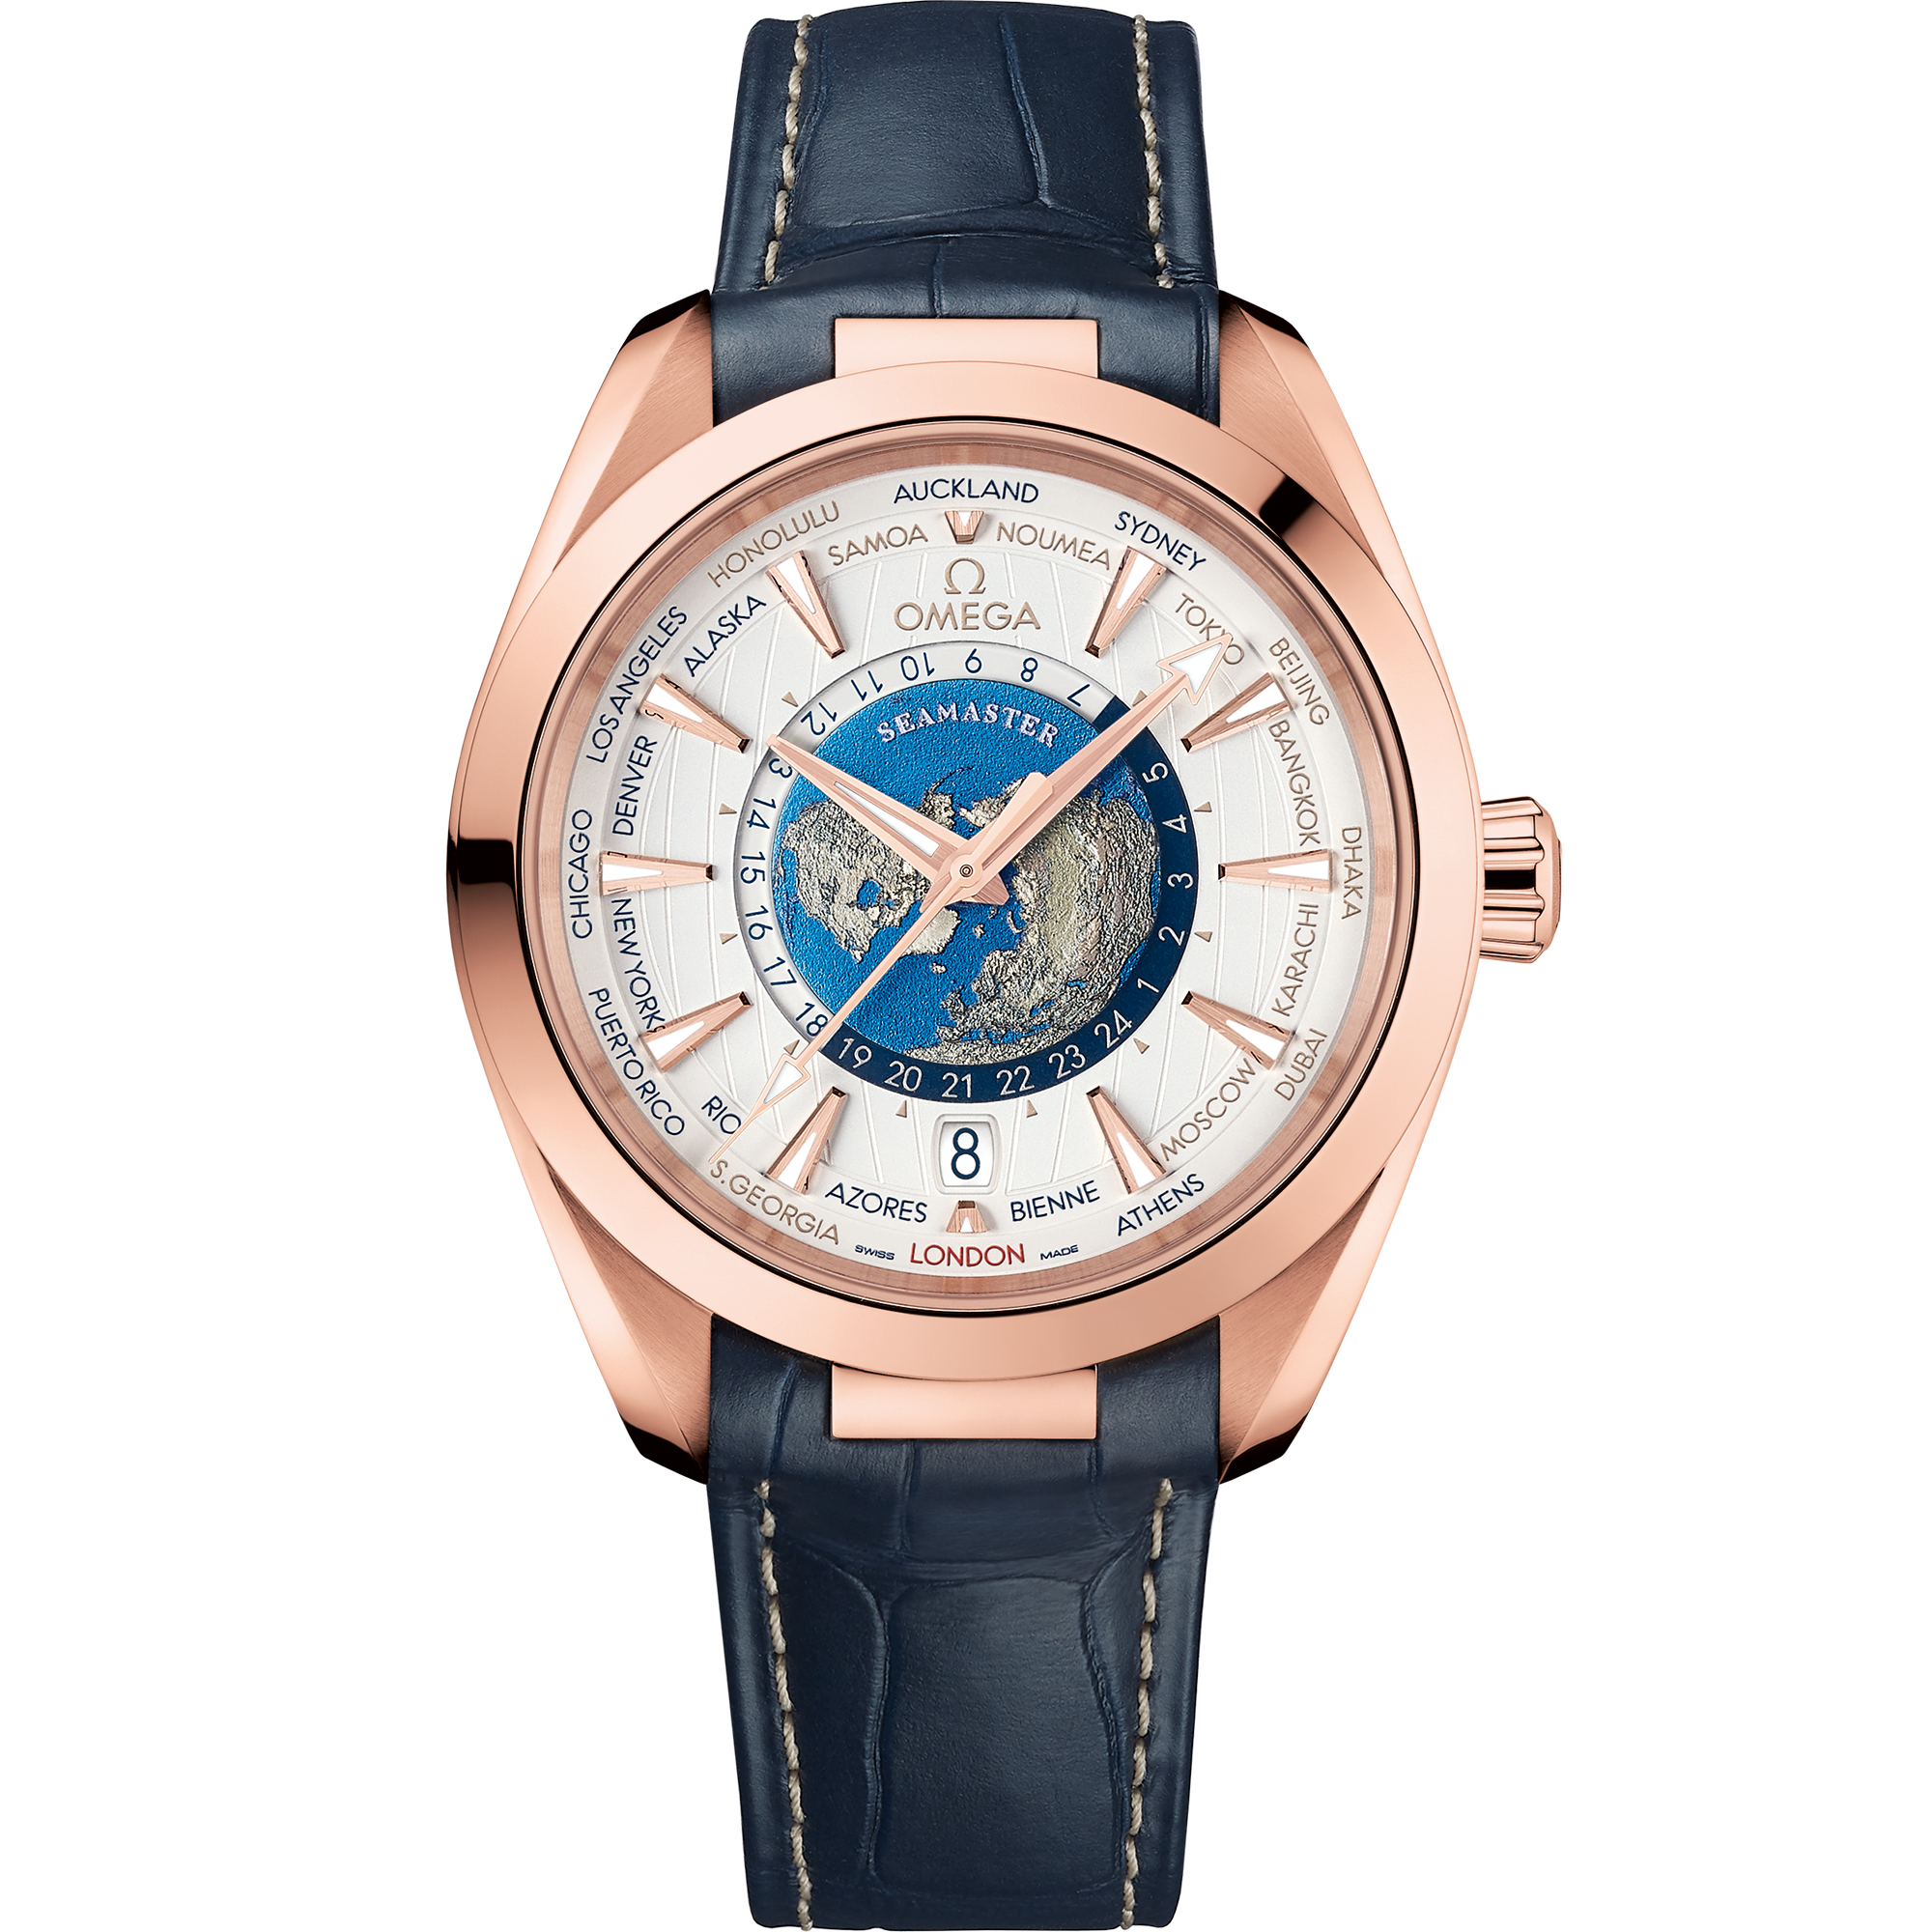 Seamaster Aqua Terra 150M 43 mm, ouro Sedna™ em bracelete de pele - 220.53.43.22.02.001